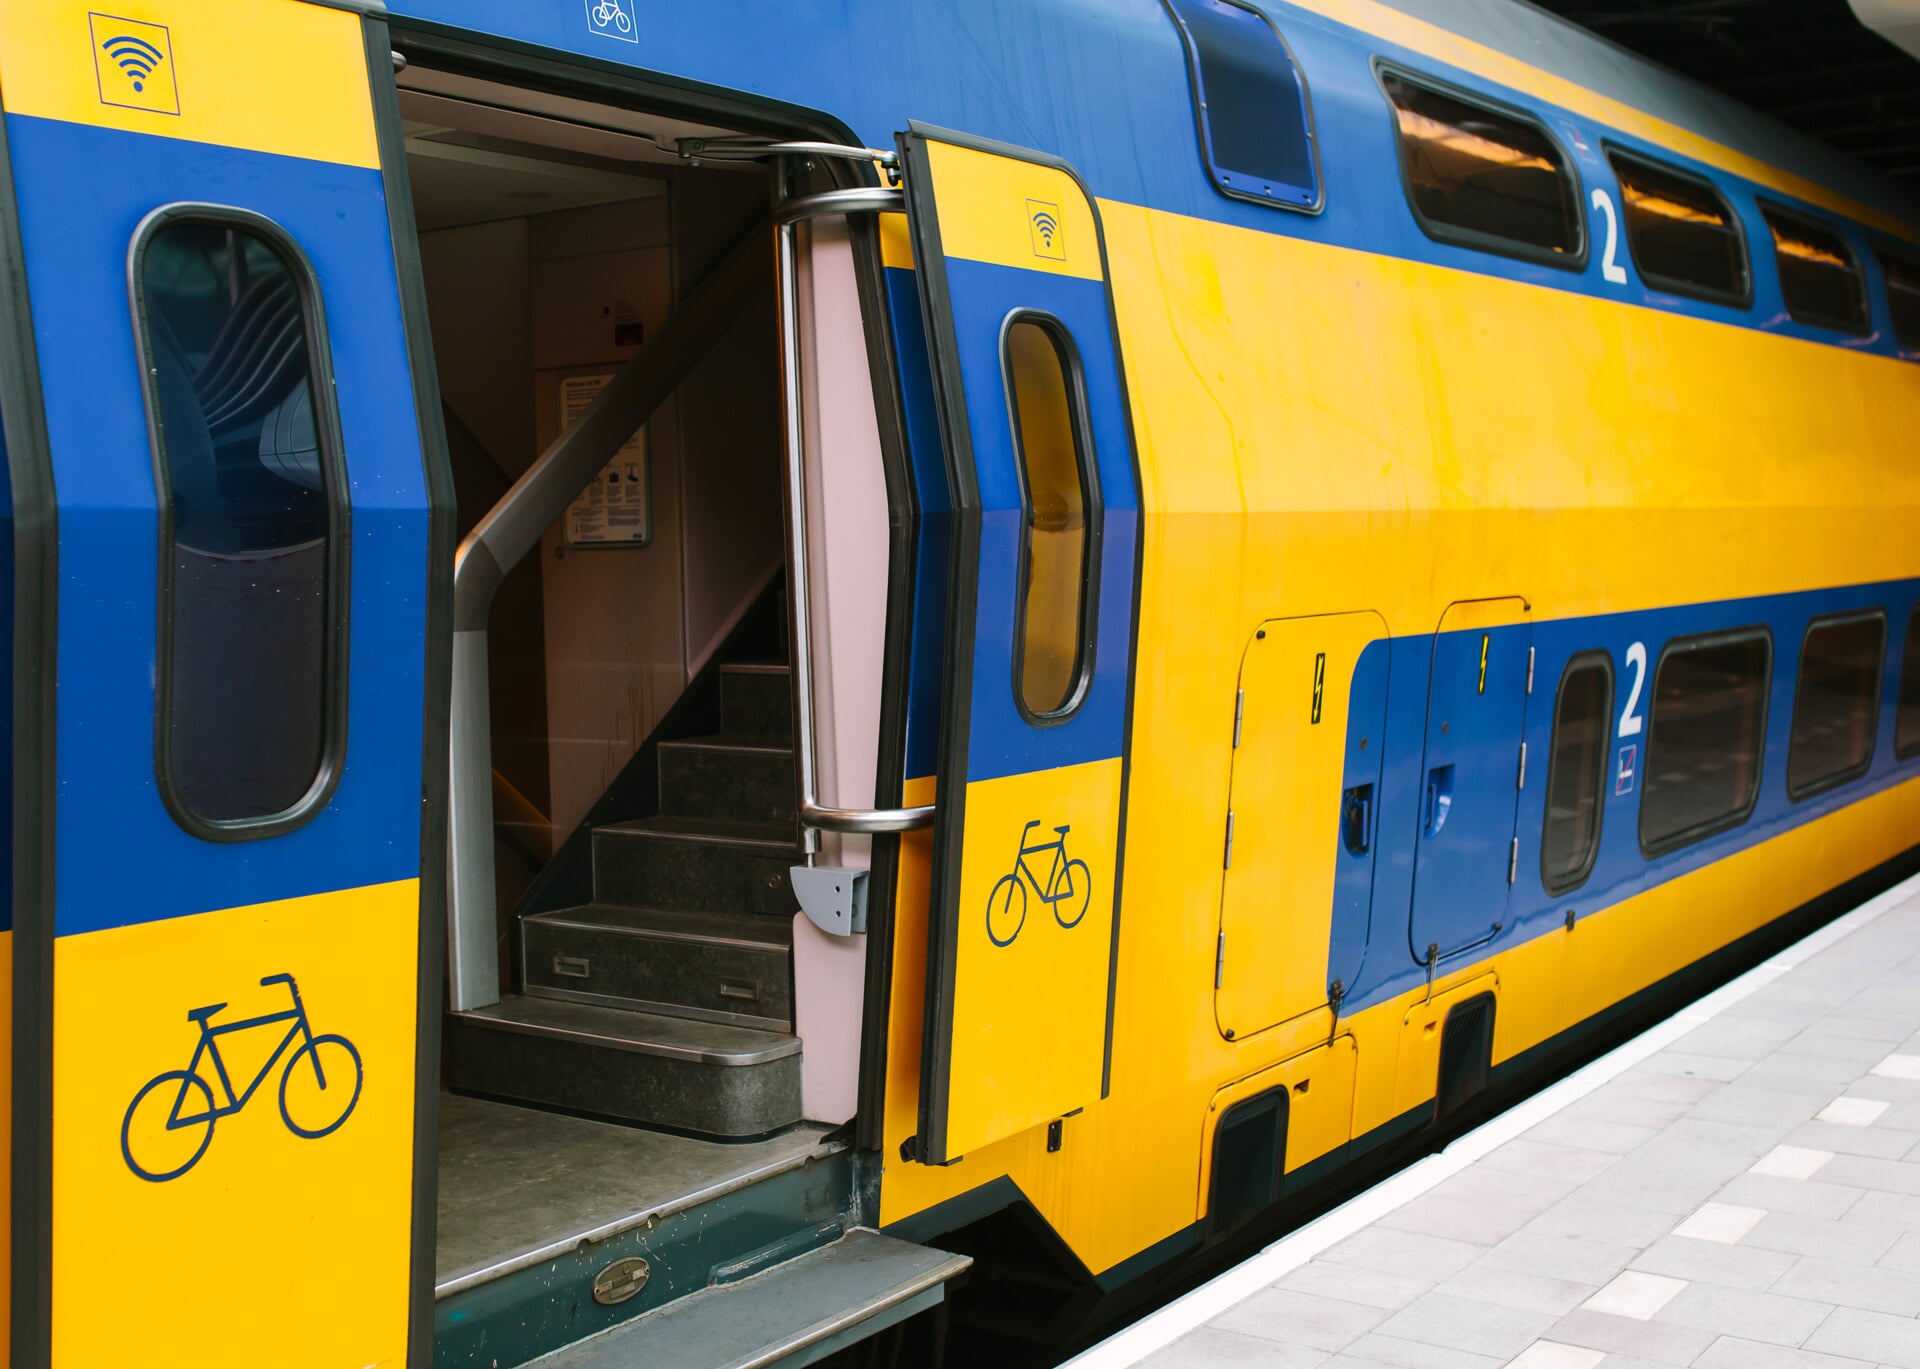 De Intercity direct is momenteel vaak vertraagd door onder meer werkzaamheden bij Rotterdam en Schiphol.